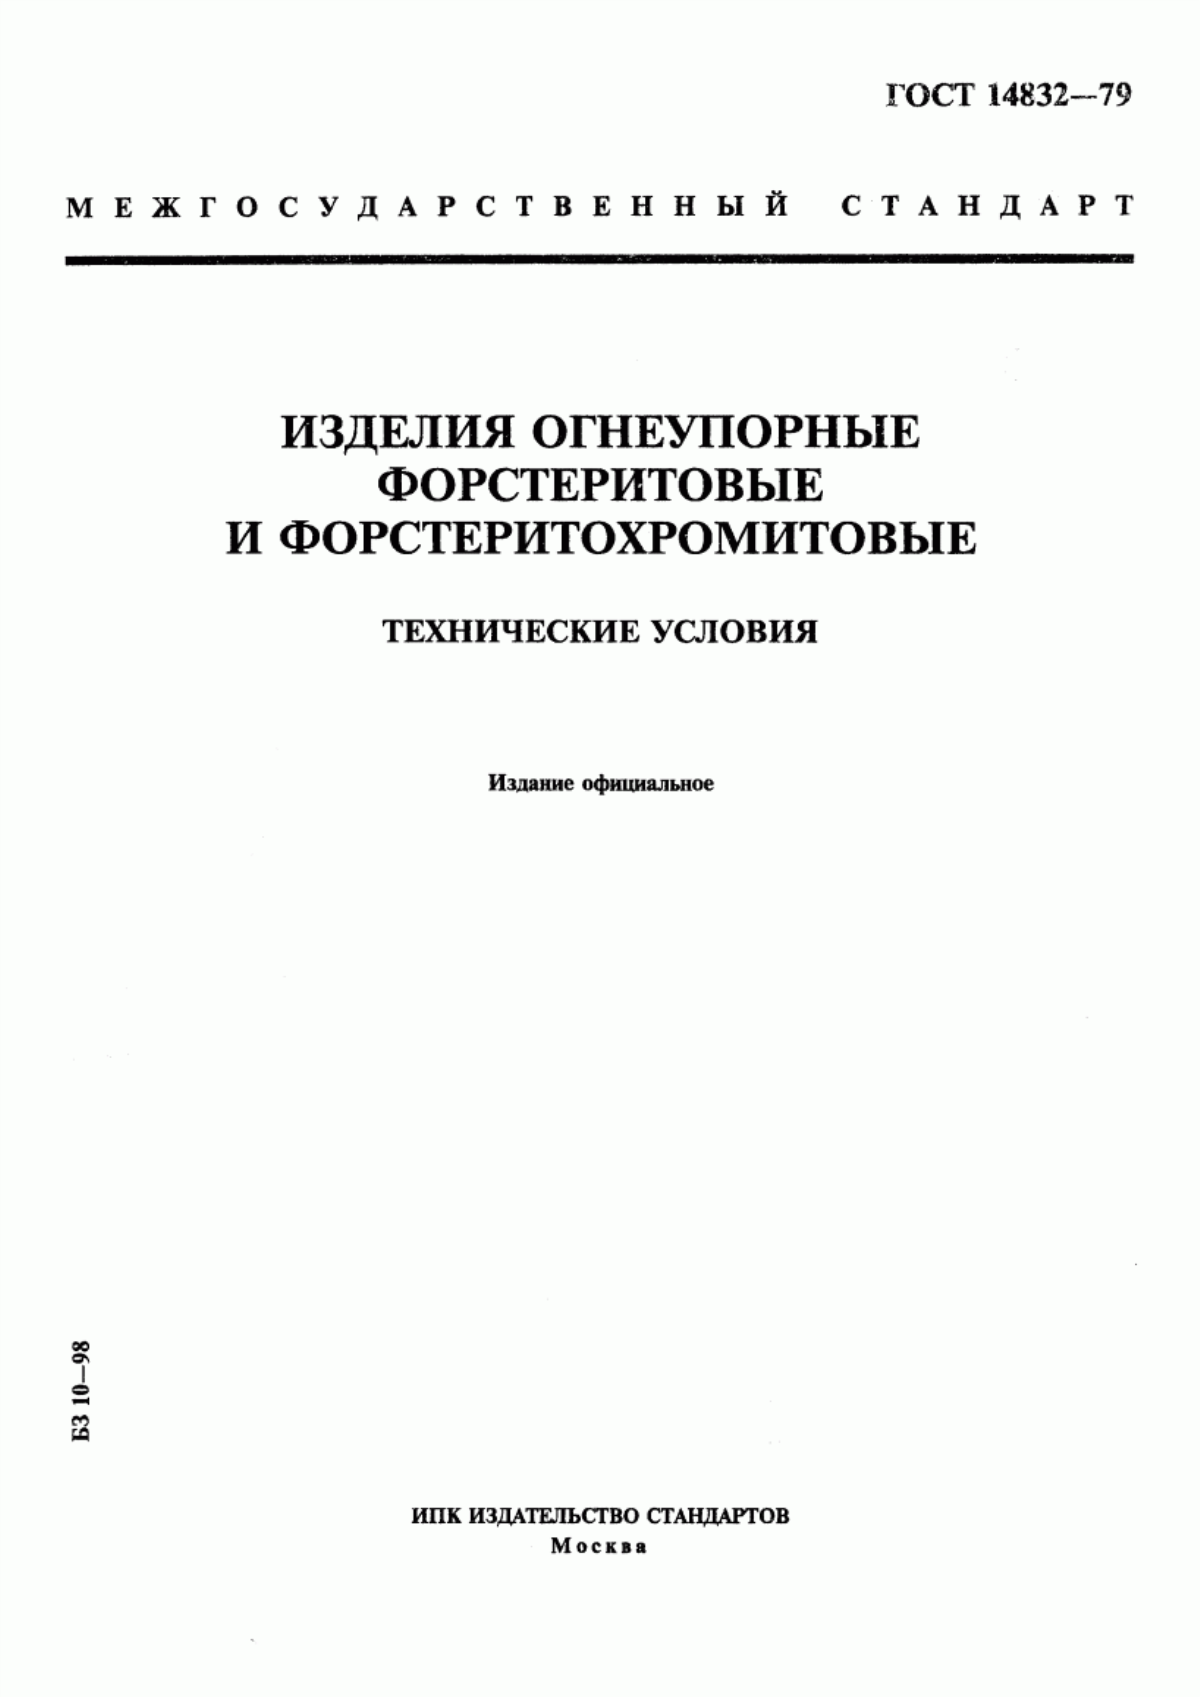 ГОСТ 14832-79 Изделия огнеупорные форстеритовые и форстеритохромитовые. Технические условия